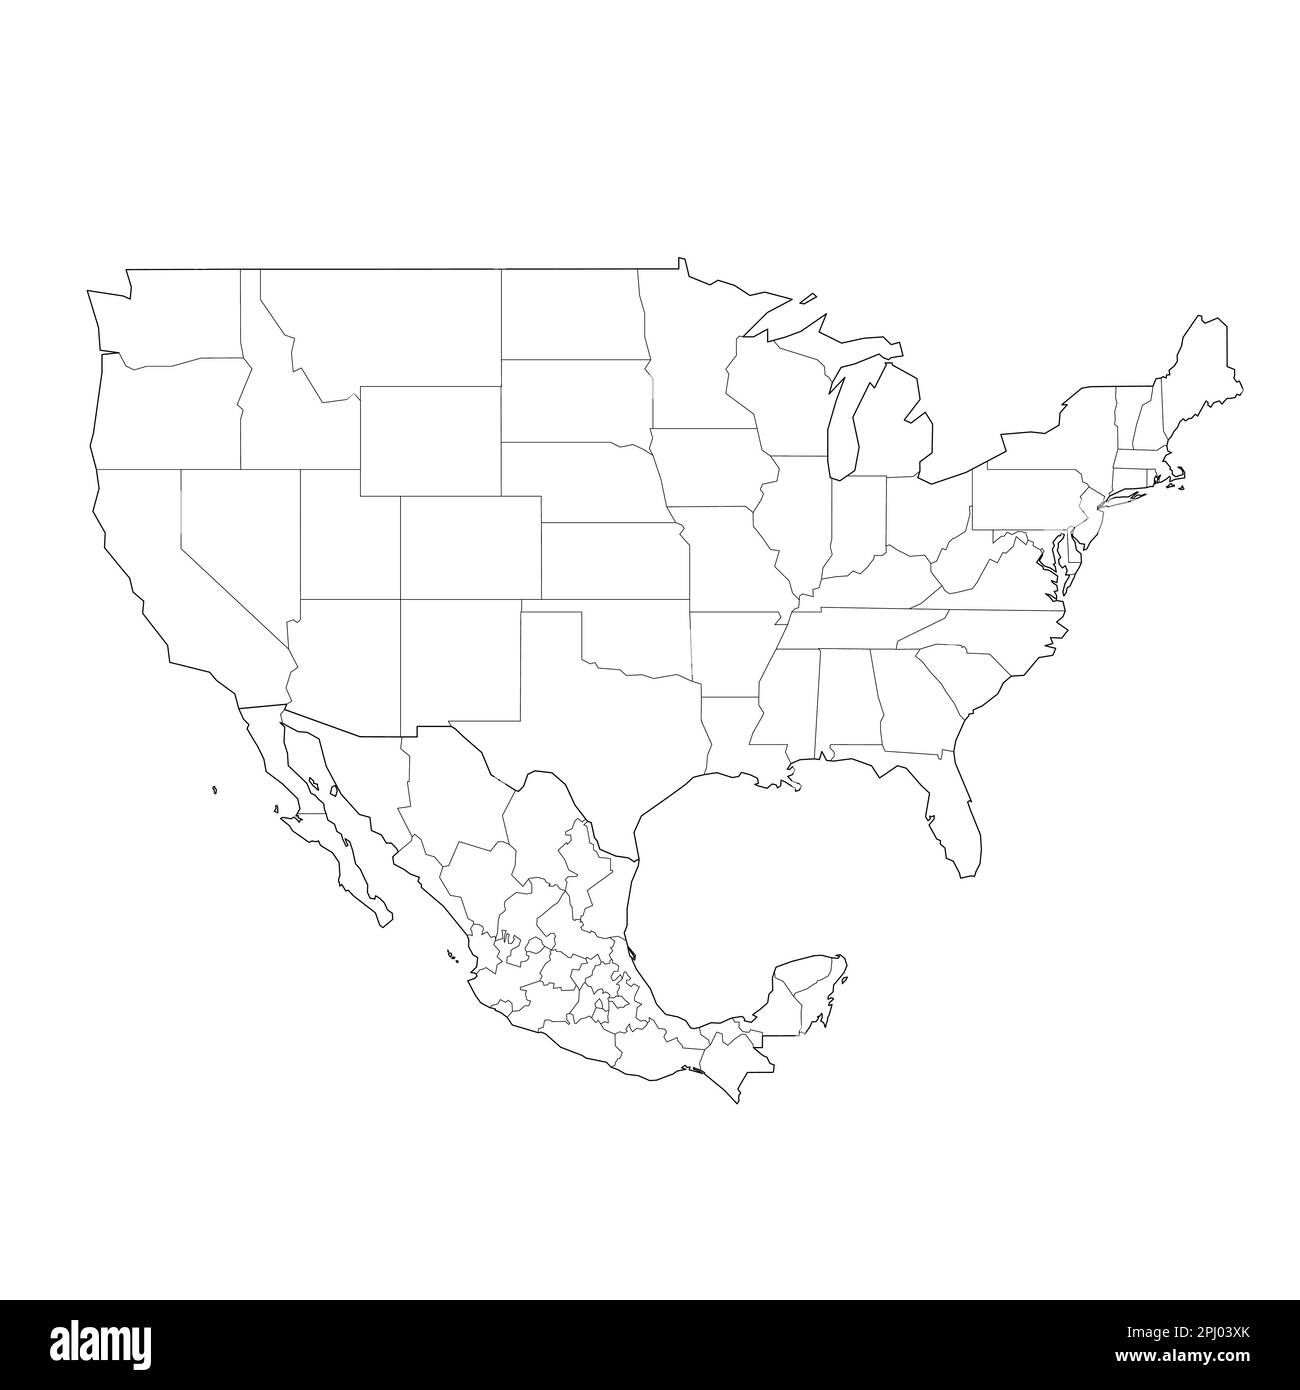 Mappa politica degli Stati Uniti e del Messico delle divisioni amministrative. Mappa vettoriale con contorno nero vuota Illustrazione Vettoriale